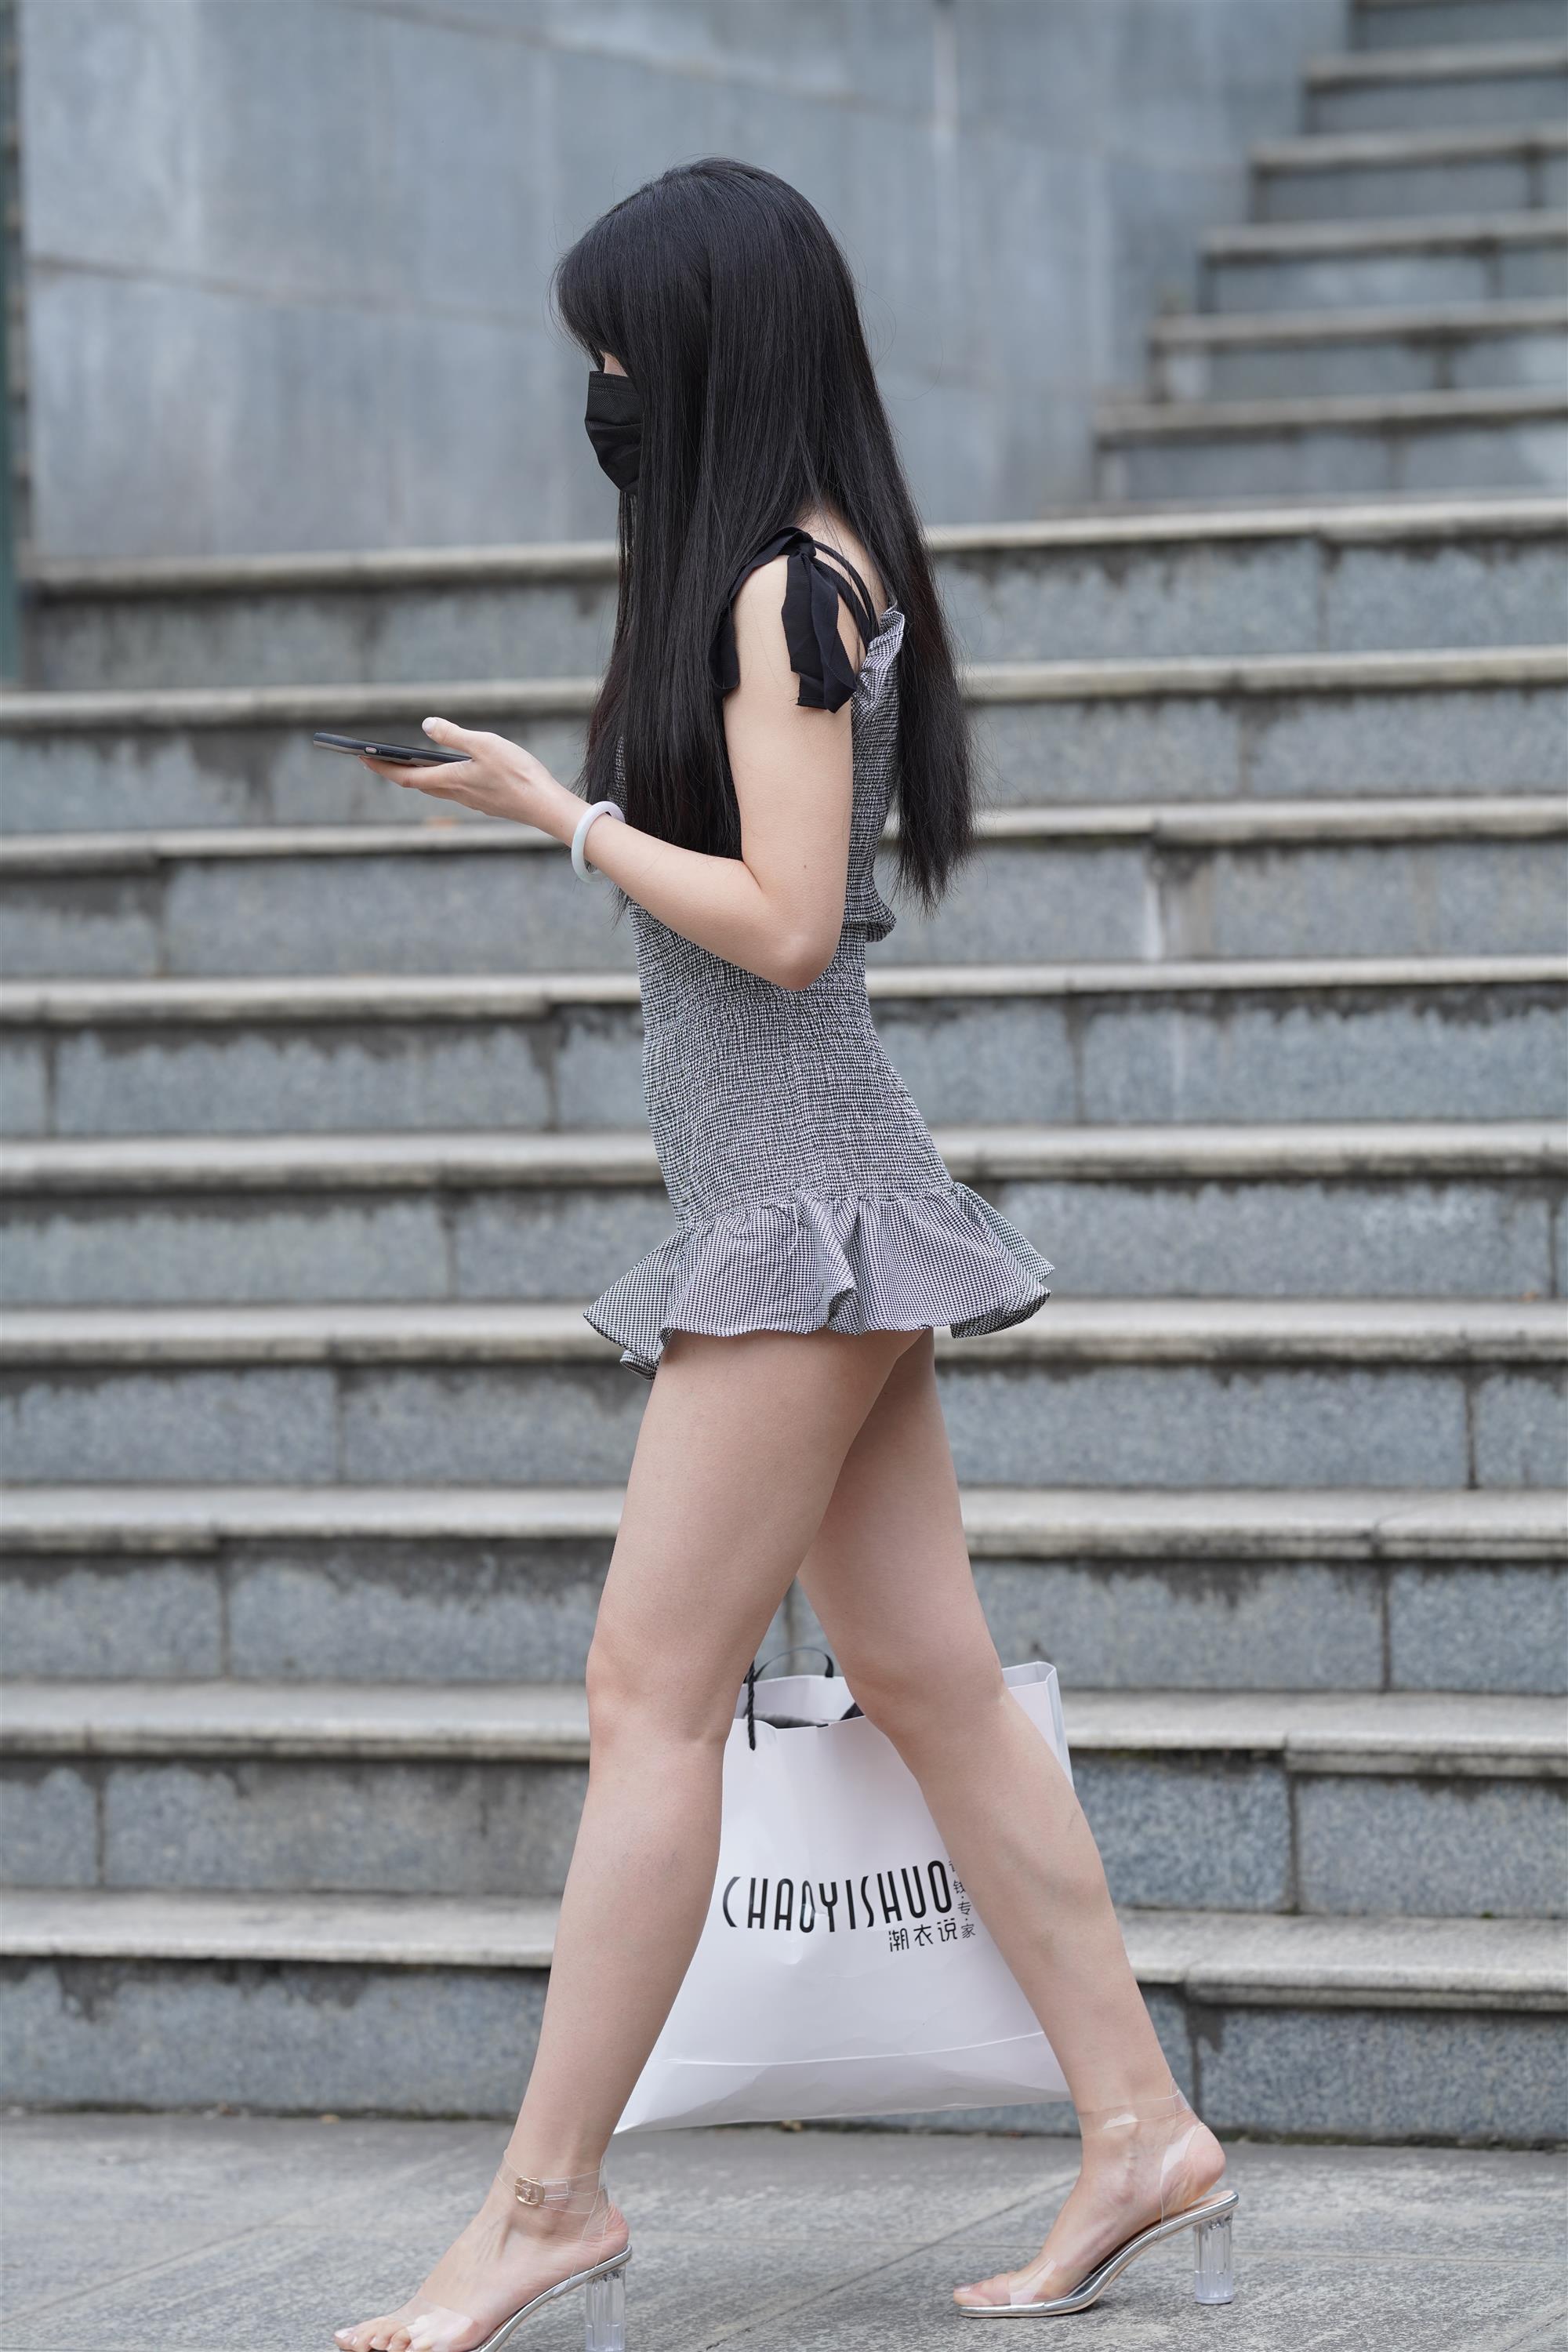 Street Girl In Short Skirt - 190.jpg